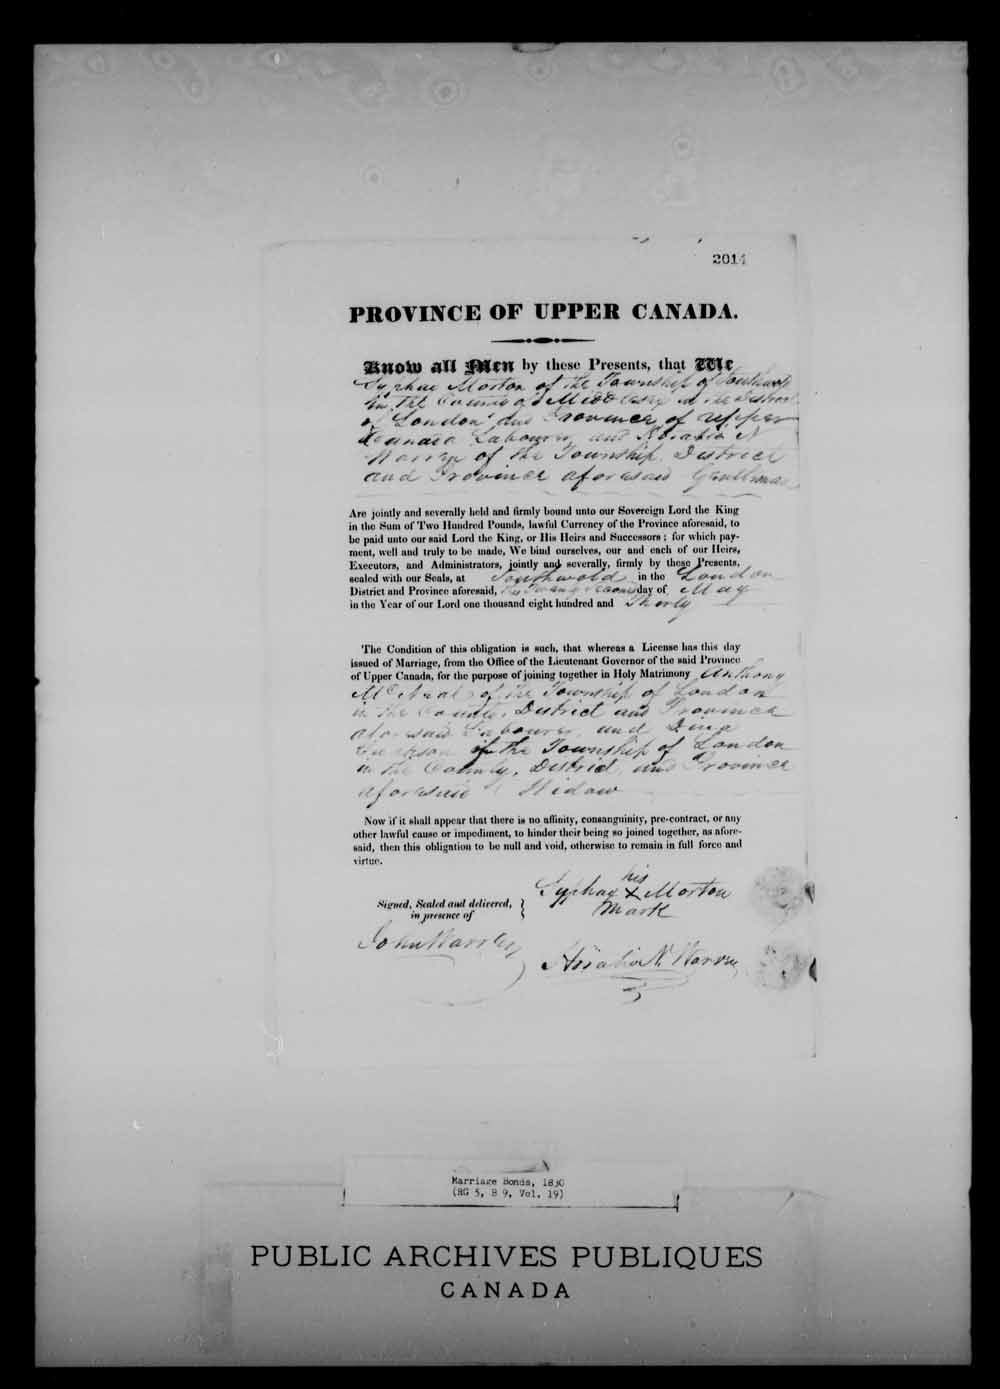 Page numérisé de Cautionnements de mariages pour le Haut-Canada et le Bas-Canada (1779-1865) pour l'image numéro: e008216546